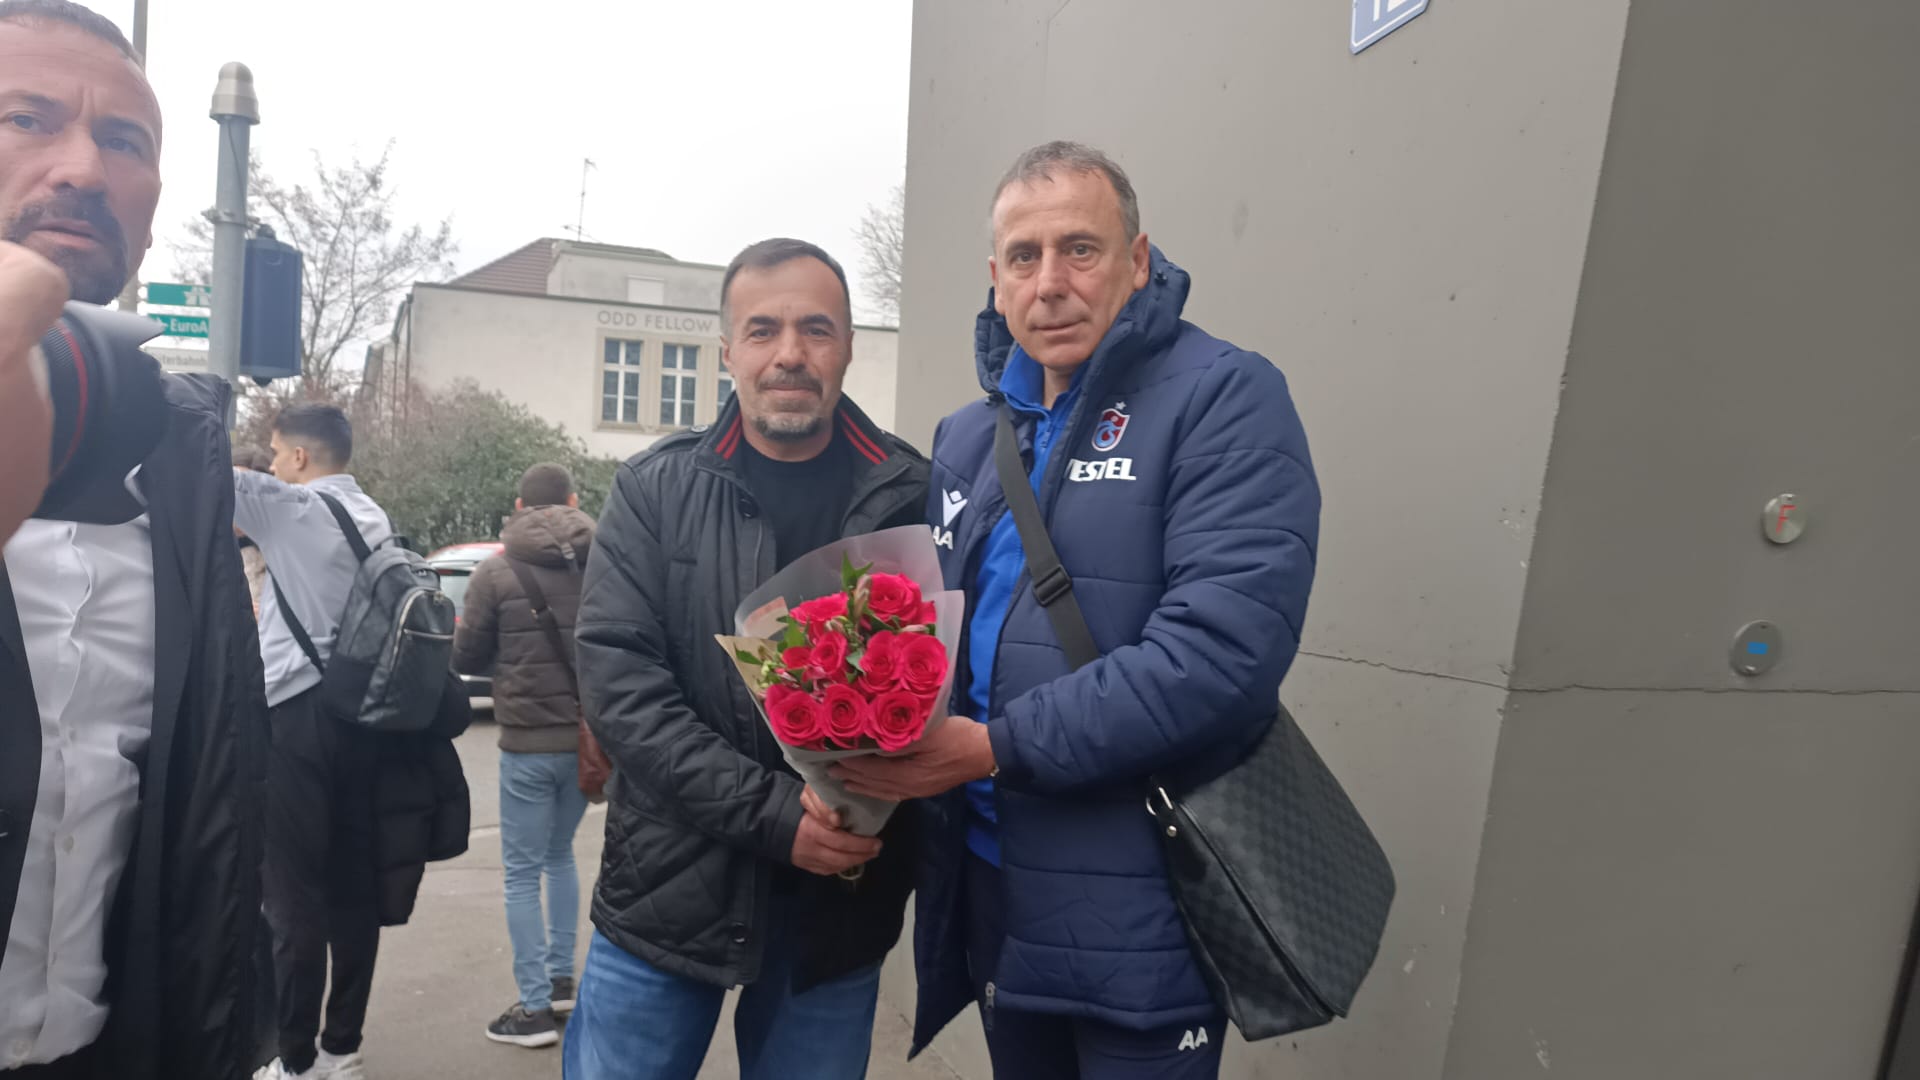 Trabzonspor Basel’de çiçeklerle karşılandı